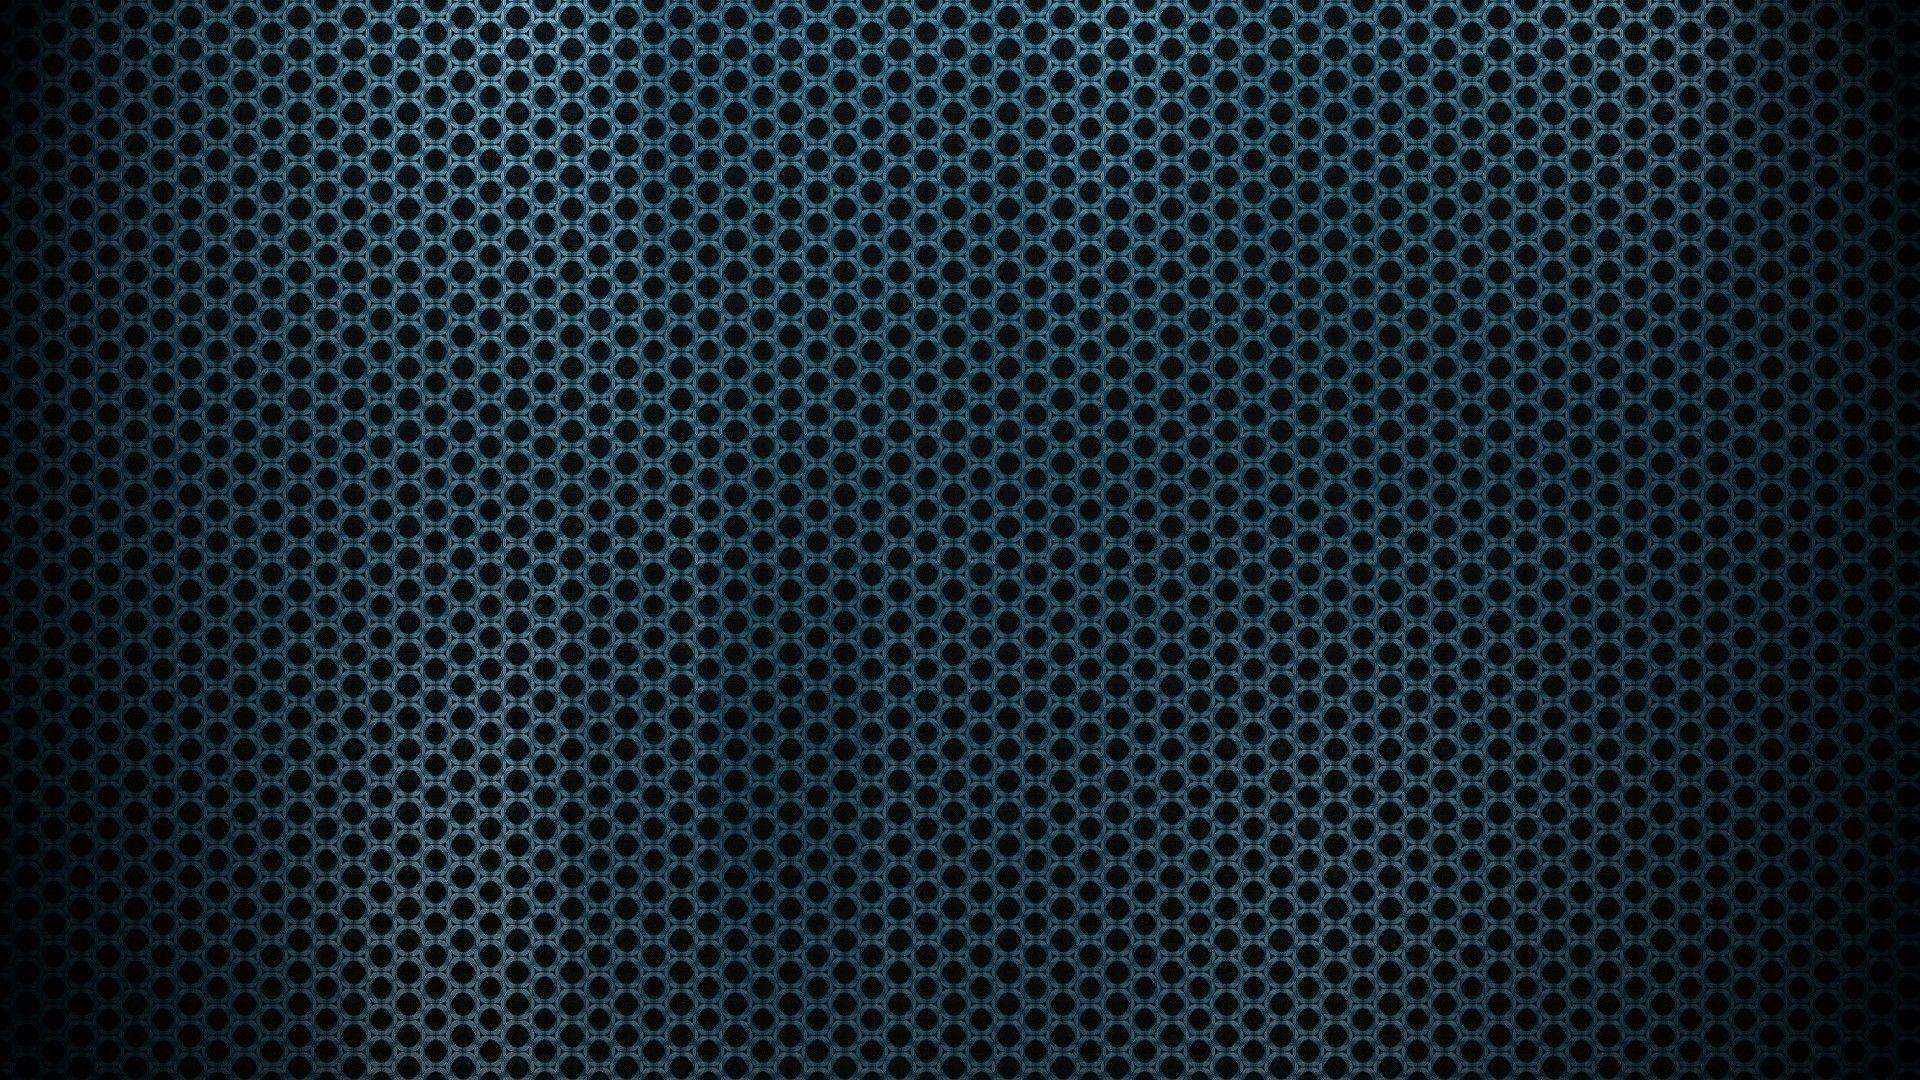 Carbon fiber wallpaper iphone 5